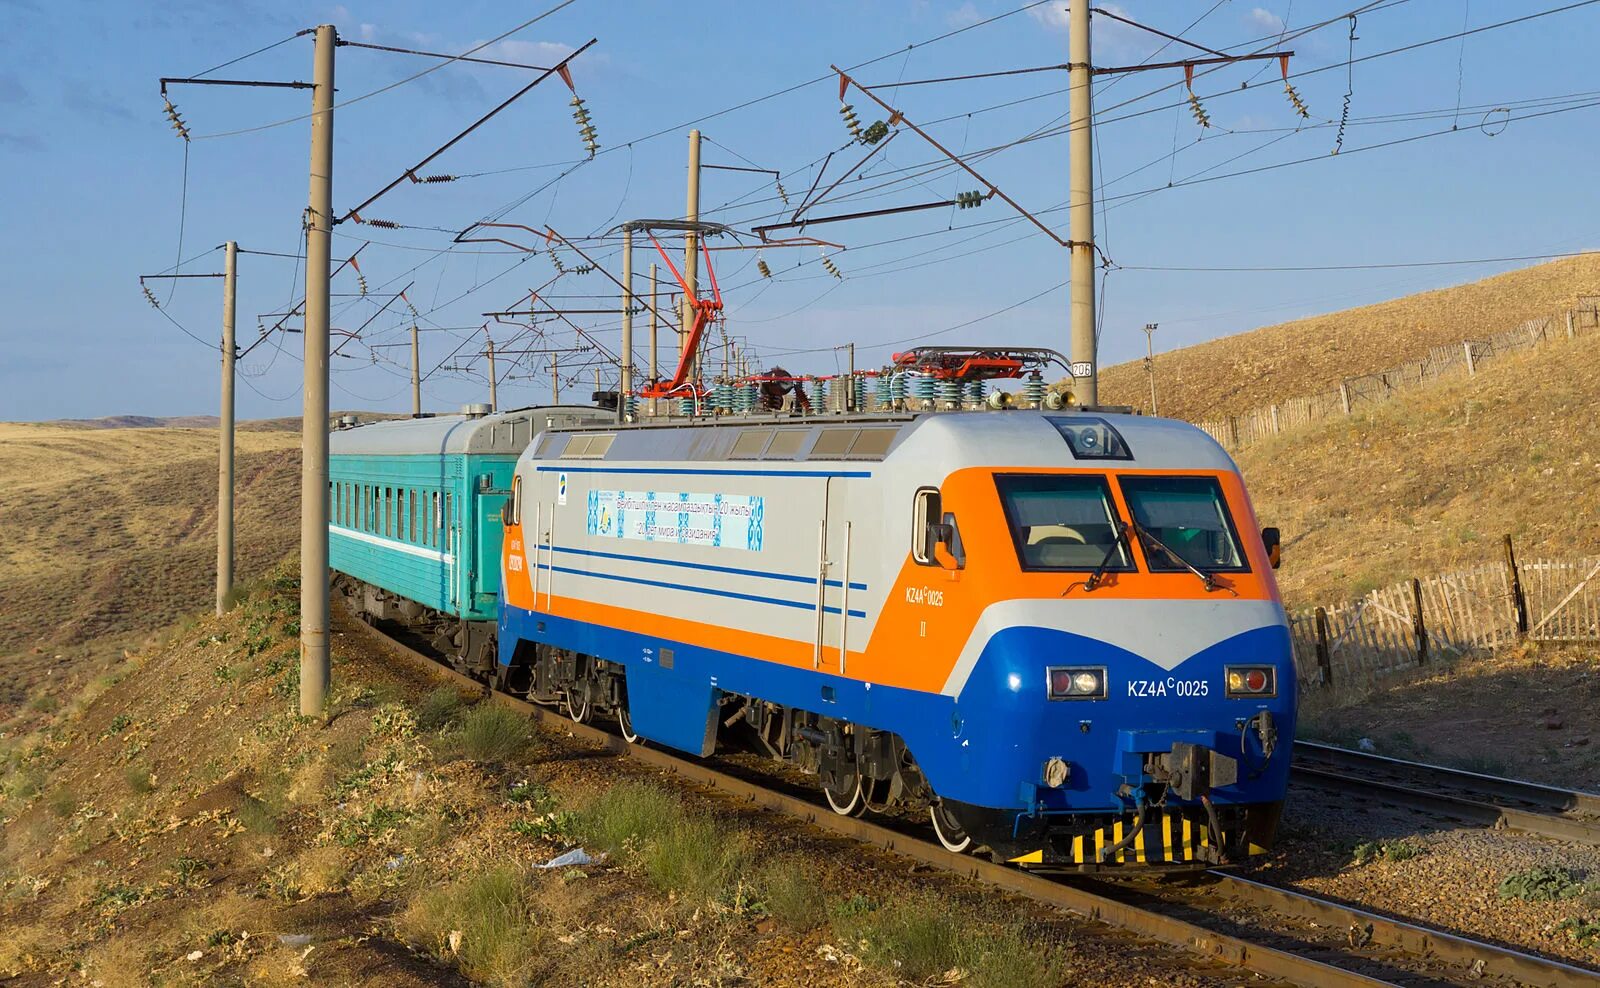 Kz4a электровоз Казахстан. Kz4a электровоз 2002. Kz4a. Поезд kz4a. Class kz ru 9